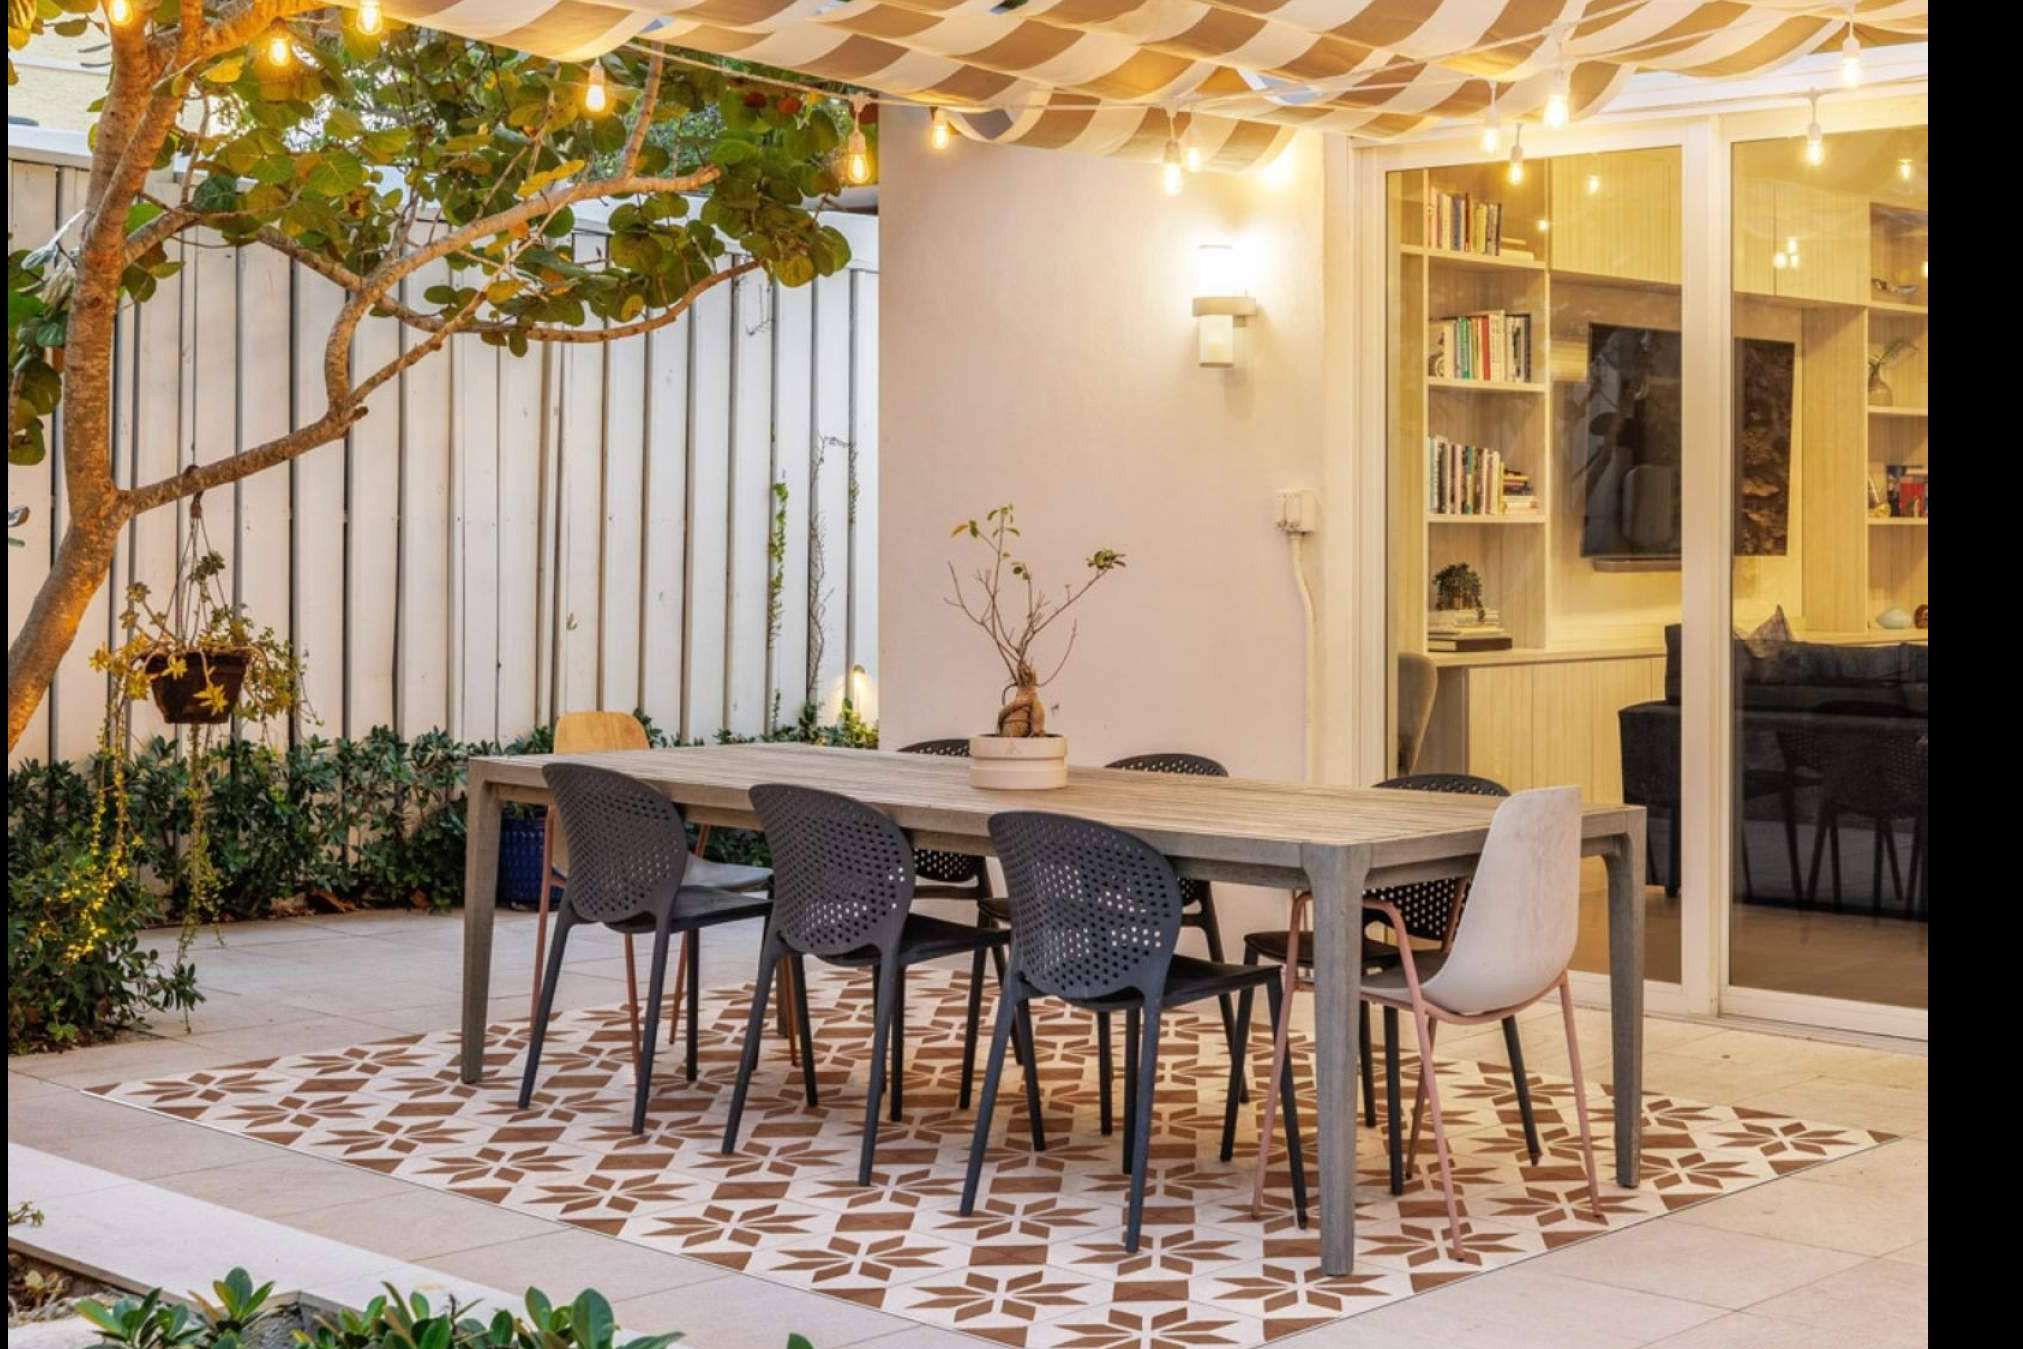  Alfombras vinílicas de PrintoDecor, la opción ideal para decorar la terraza en verano 